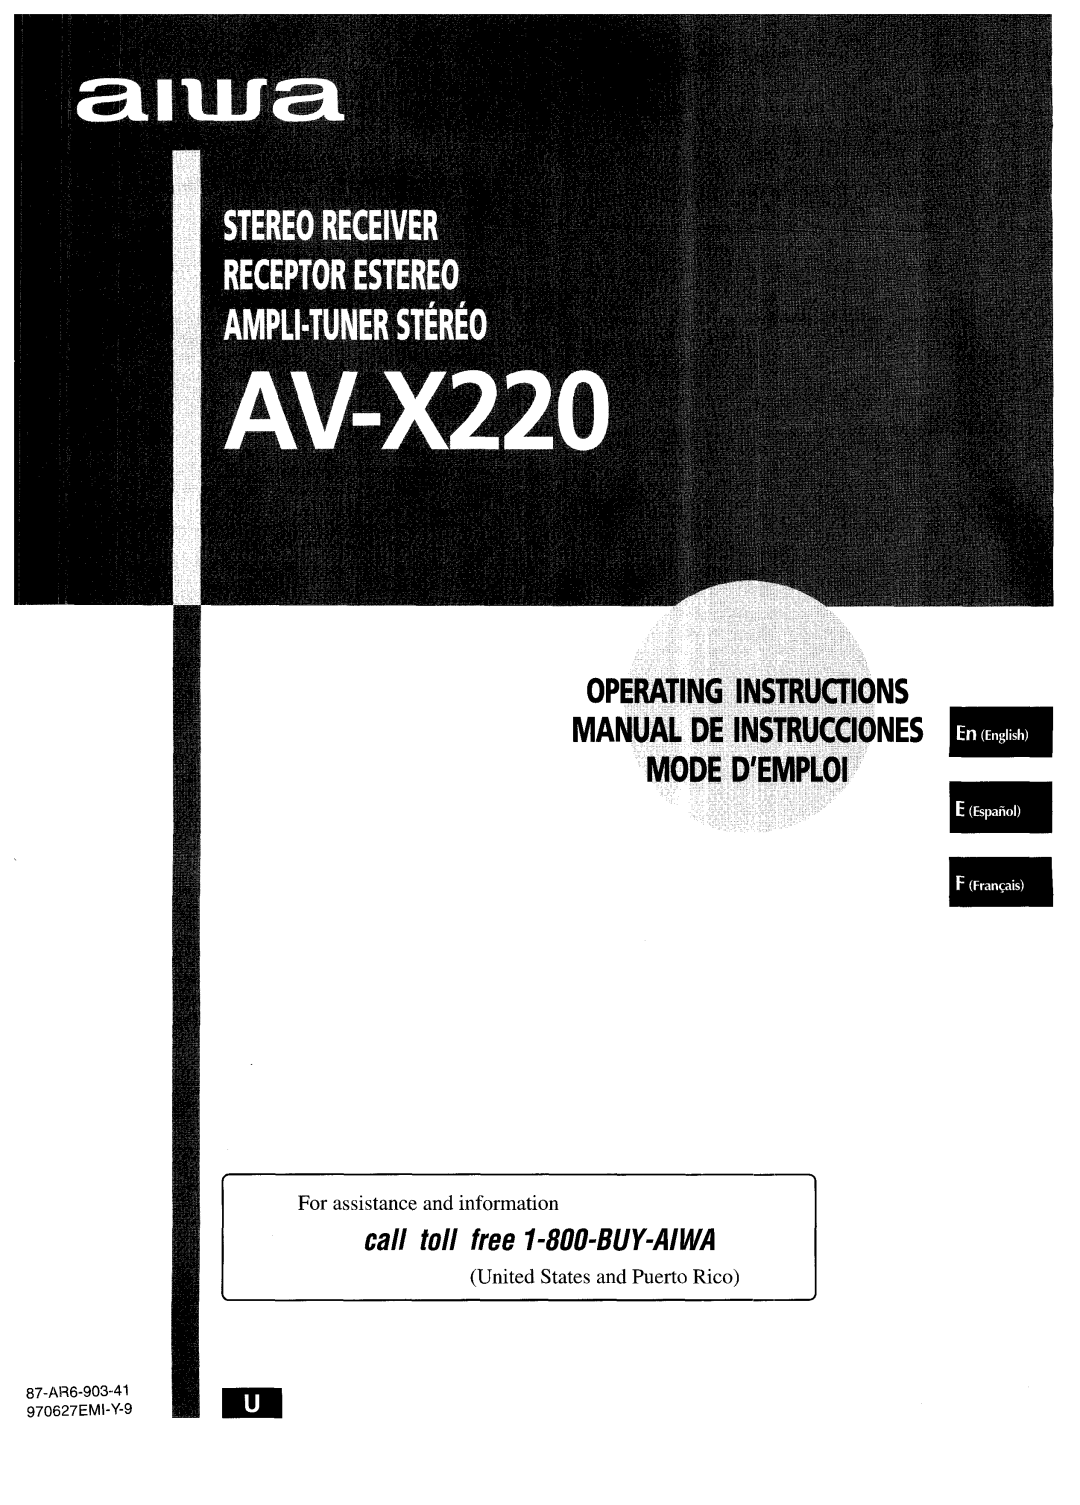 Aiwa AV-X220 manual OPERATING 1NSTIWCTIONS MANUAL DE lNSTRUCCIONES MODE D’EMPLOI, call toll free I-800-BUY-AIWA 